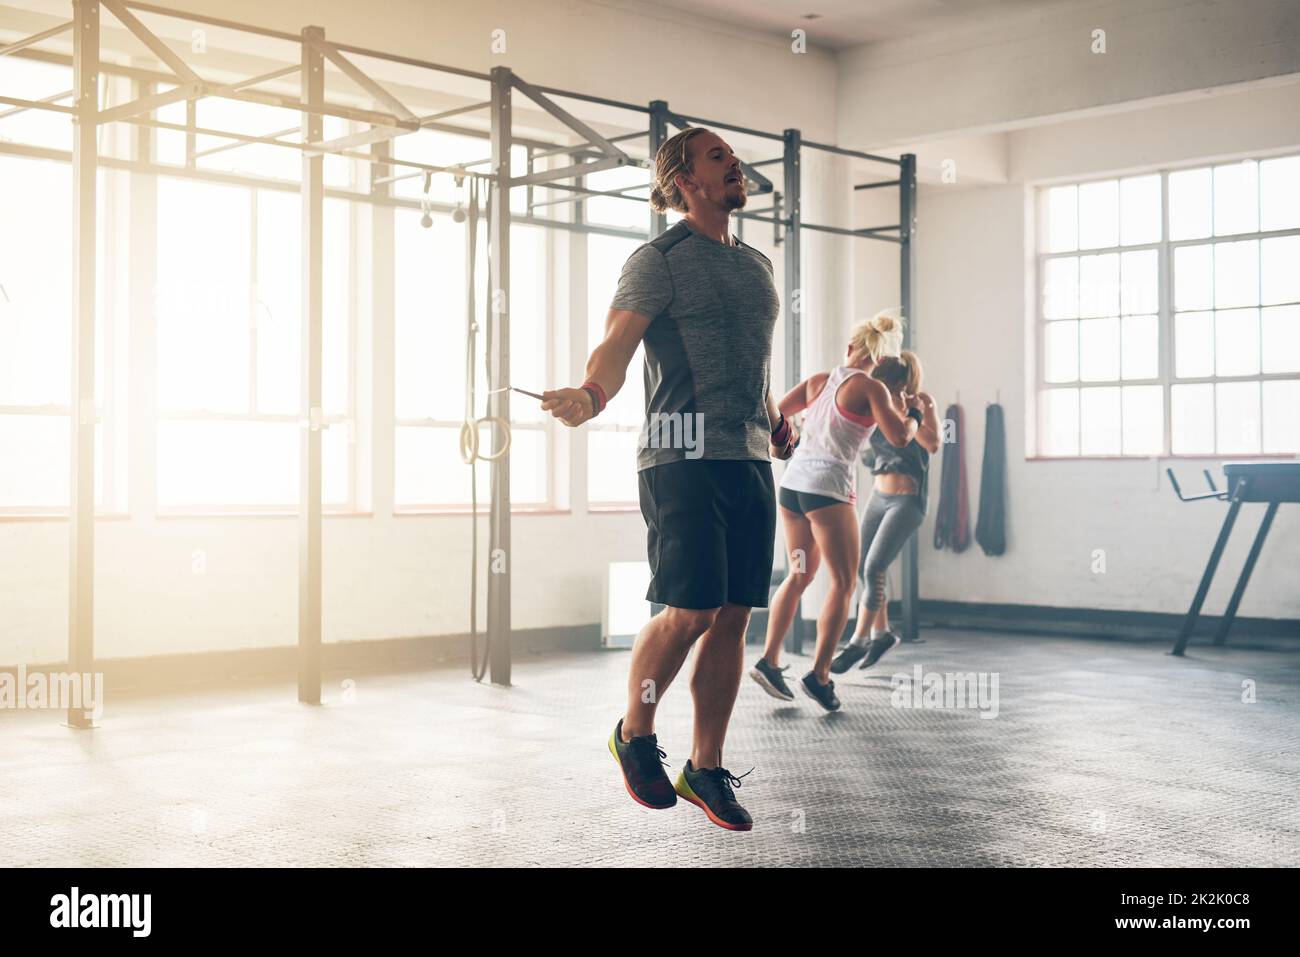 Vervollkommnen seiner Form. Aufnahme eines muskulösen jungen Mannes, der im Fitnessstudio mit einem Springseil trainiert. Stockfoto